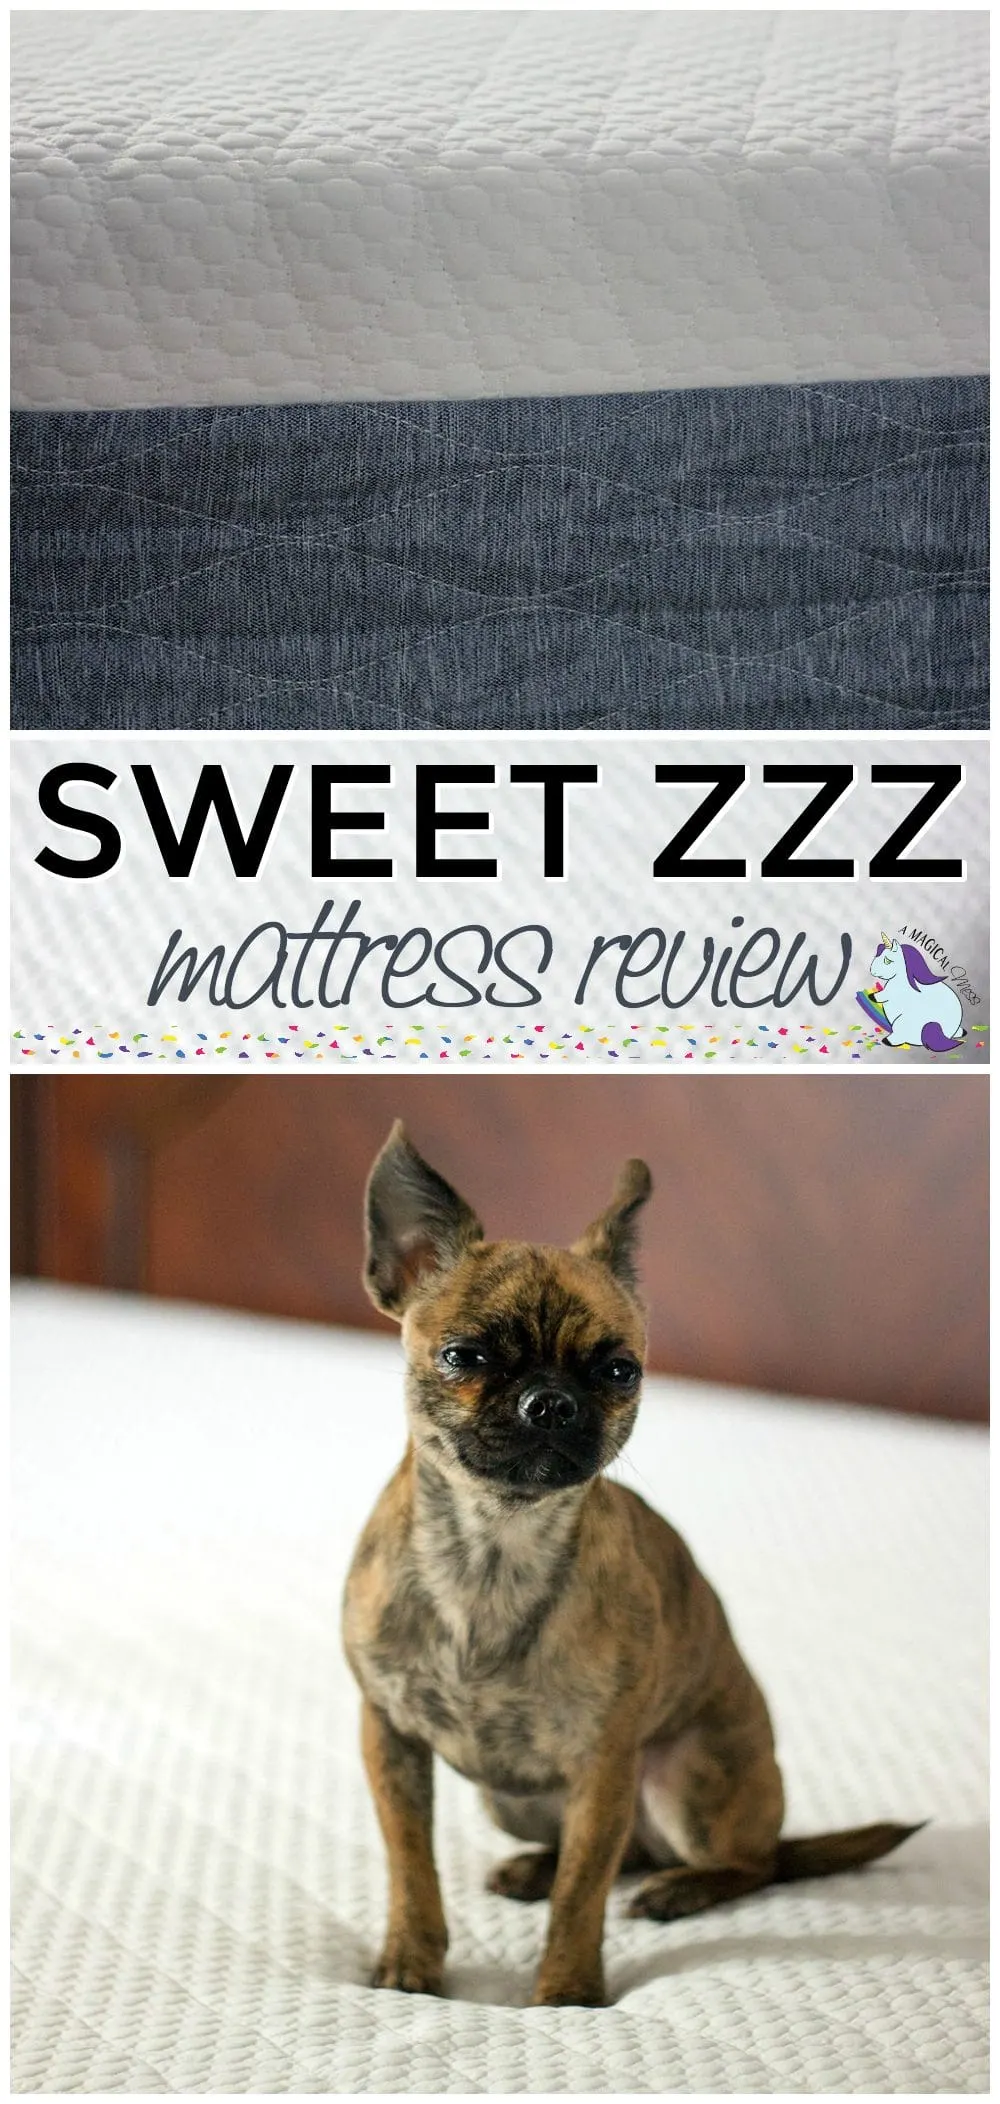 Sweet Zzz Mattress Review from an Insomniac